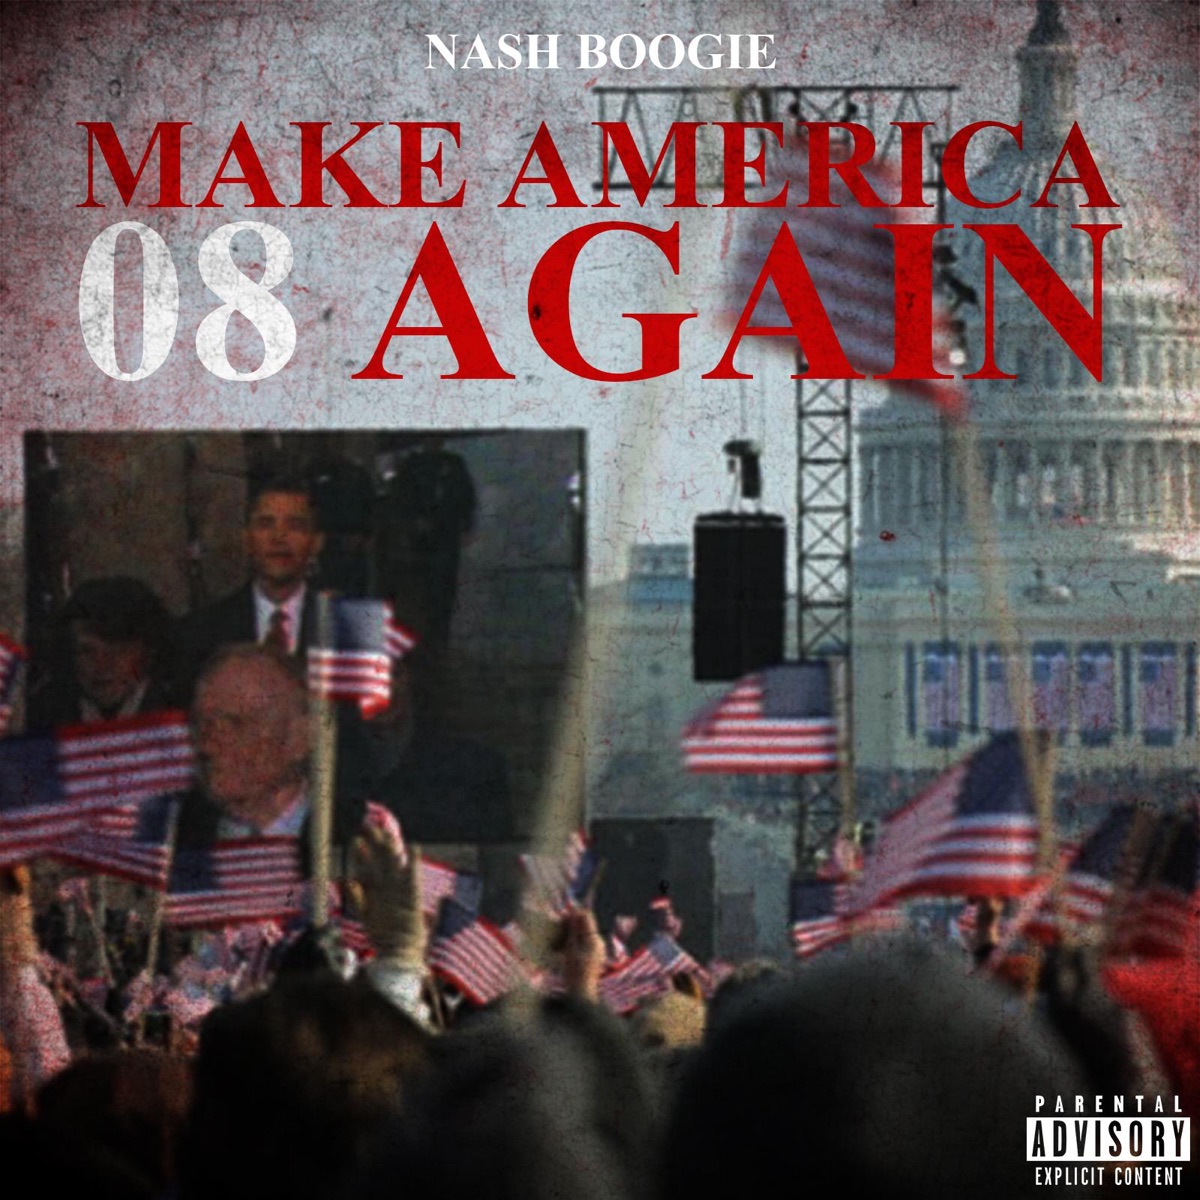 Nash Boogie - Make America 08 Again